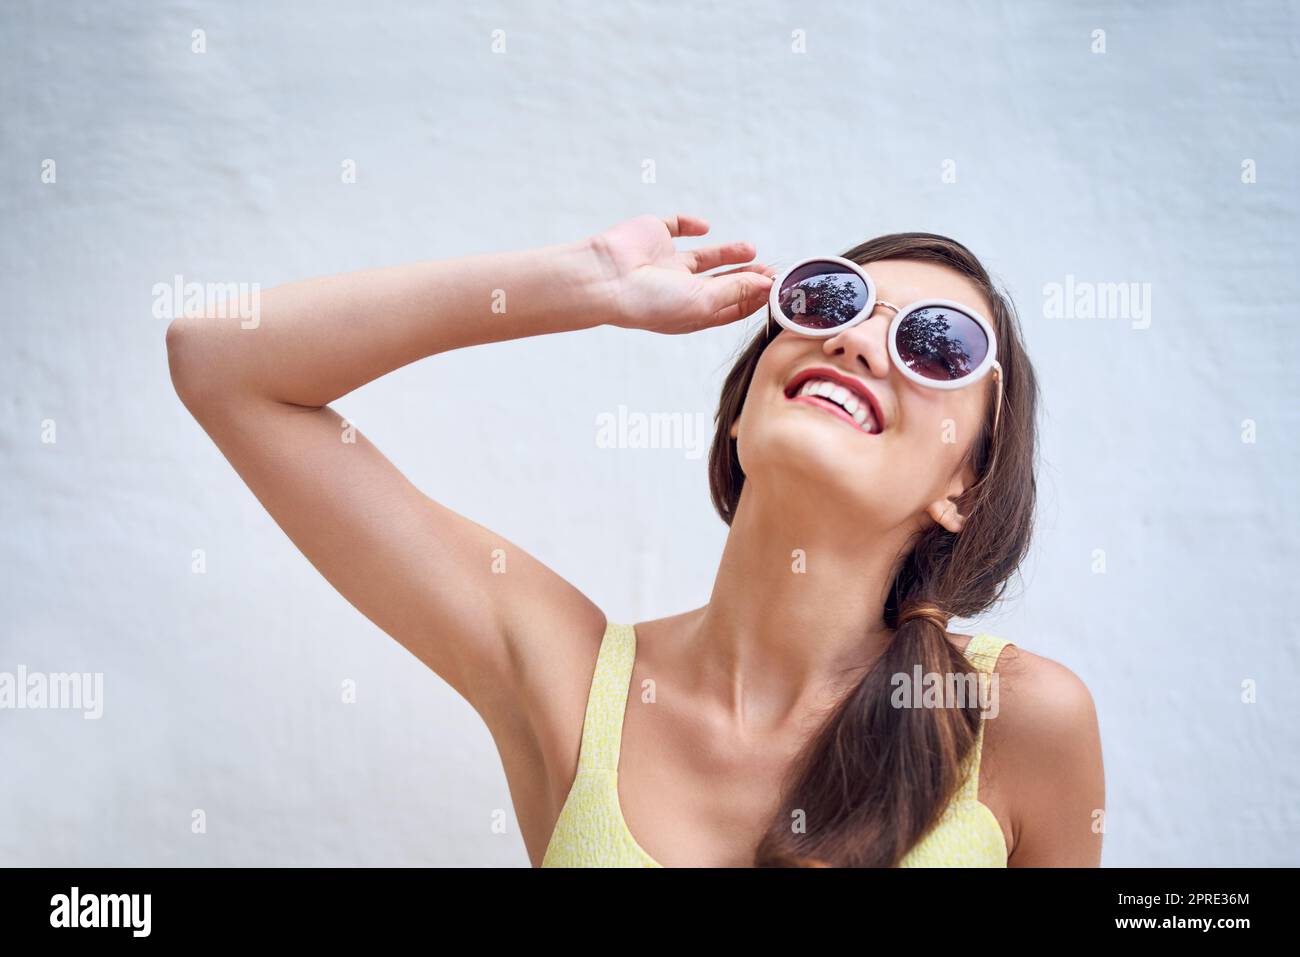 Bringen Sie die Sonne auf. Studioaufnahme einer fröhlichen jungen Frau, die eine Sonnenbrille trägt und vor einem grauen Hintergrund posiert. Stockfoto